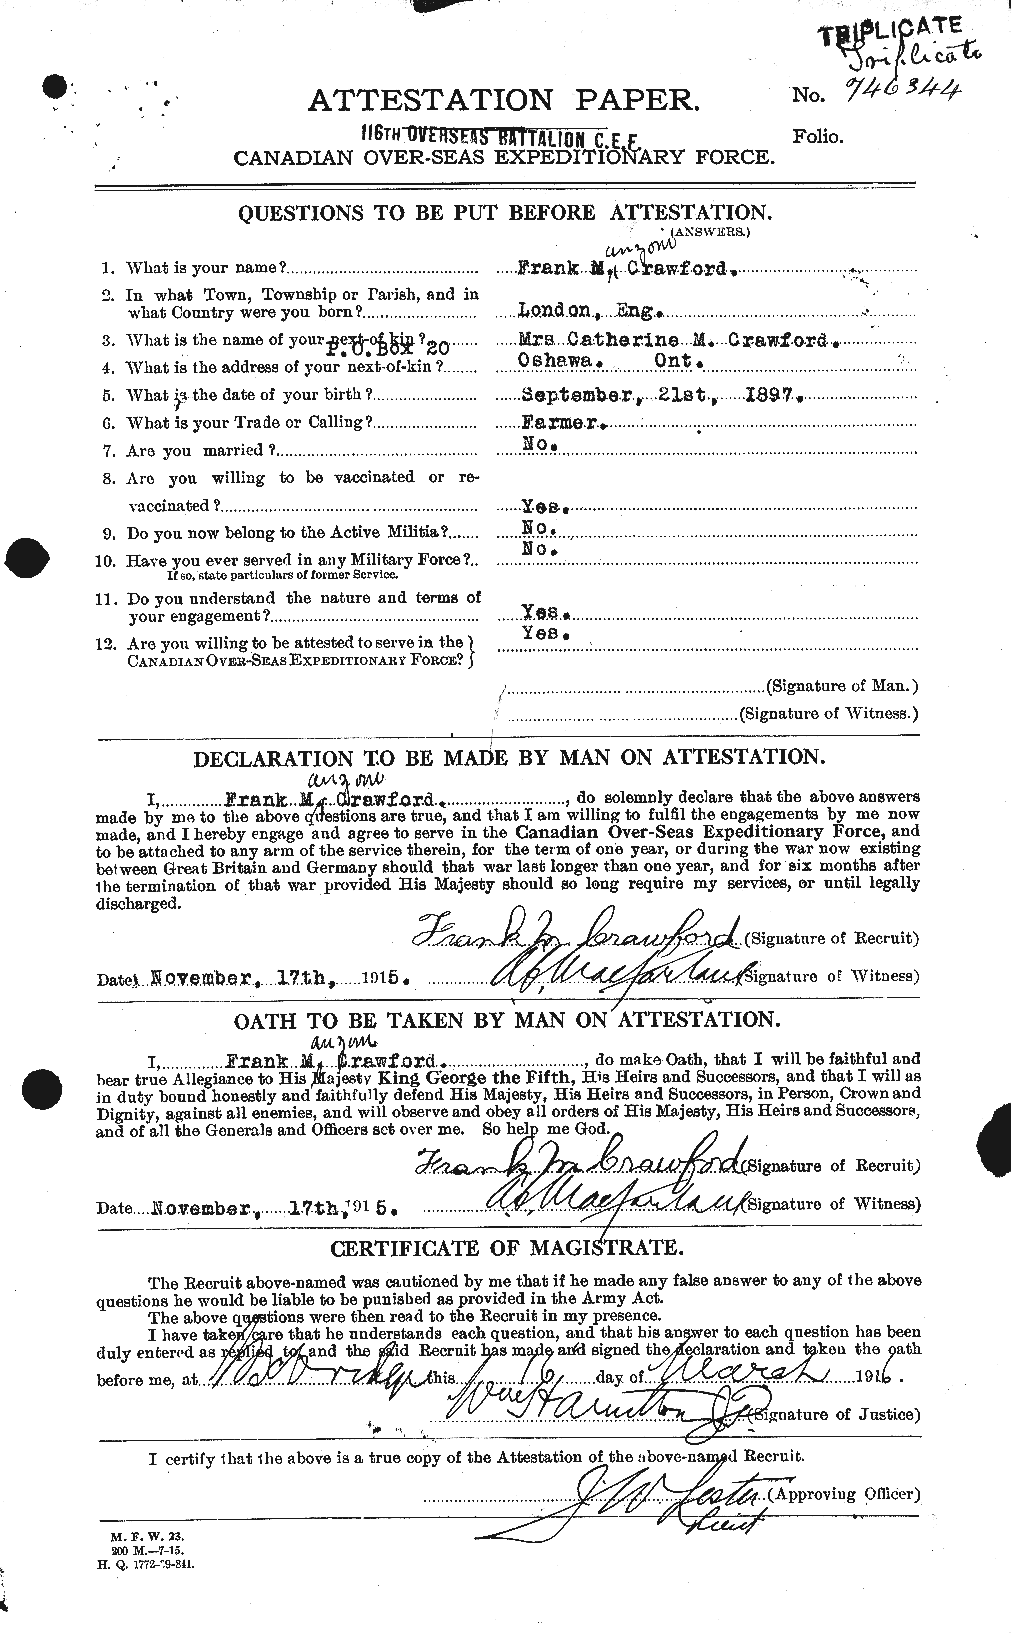 Dossiers du Personnel de la Première Guerre mondiale - CEC 060735a